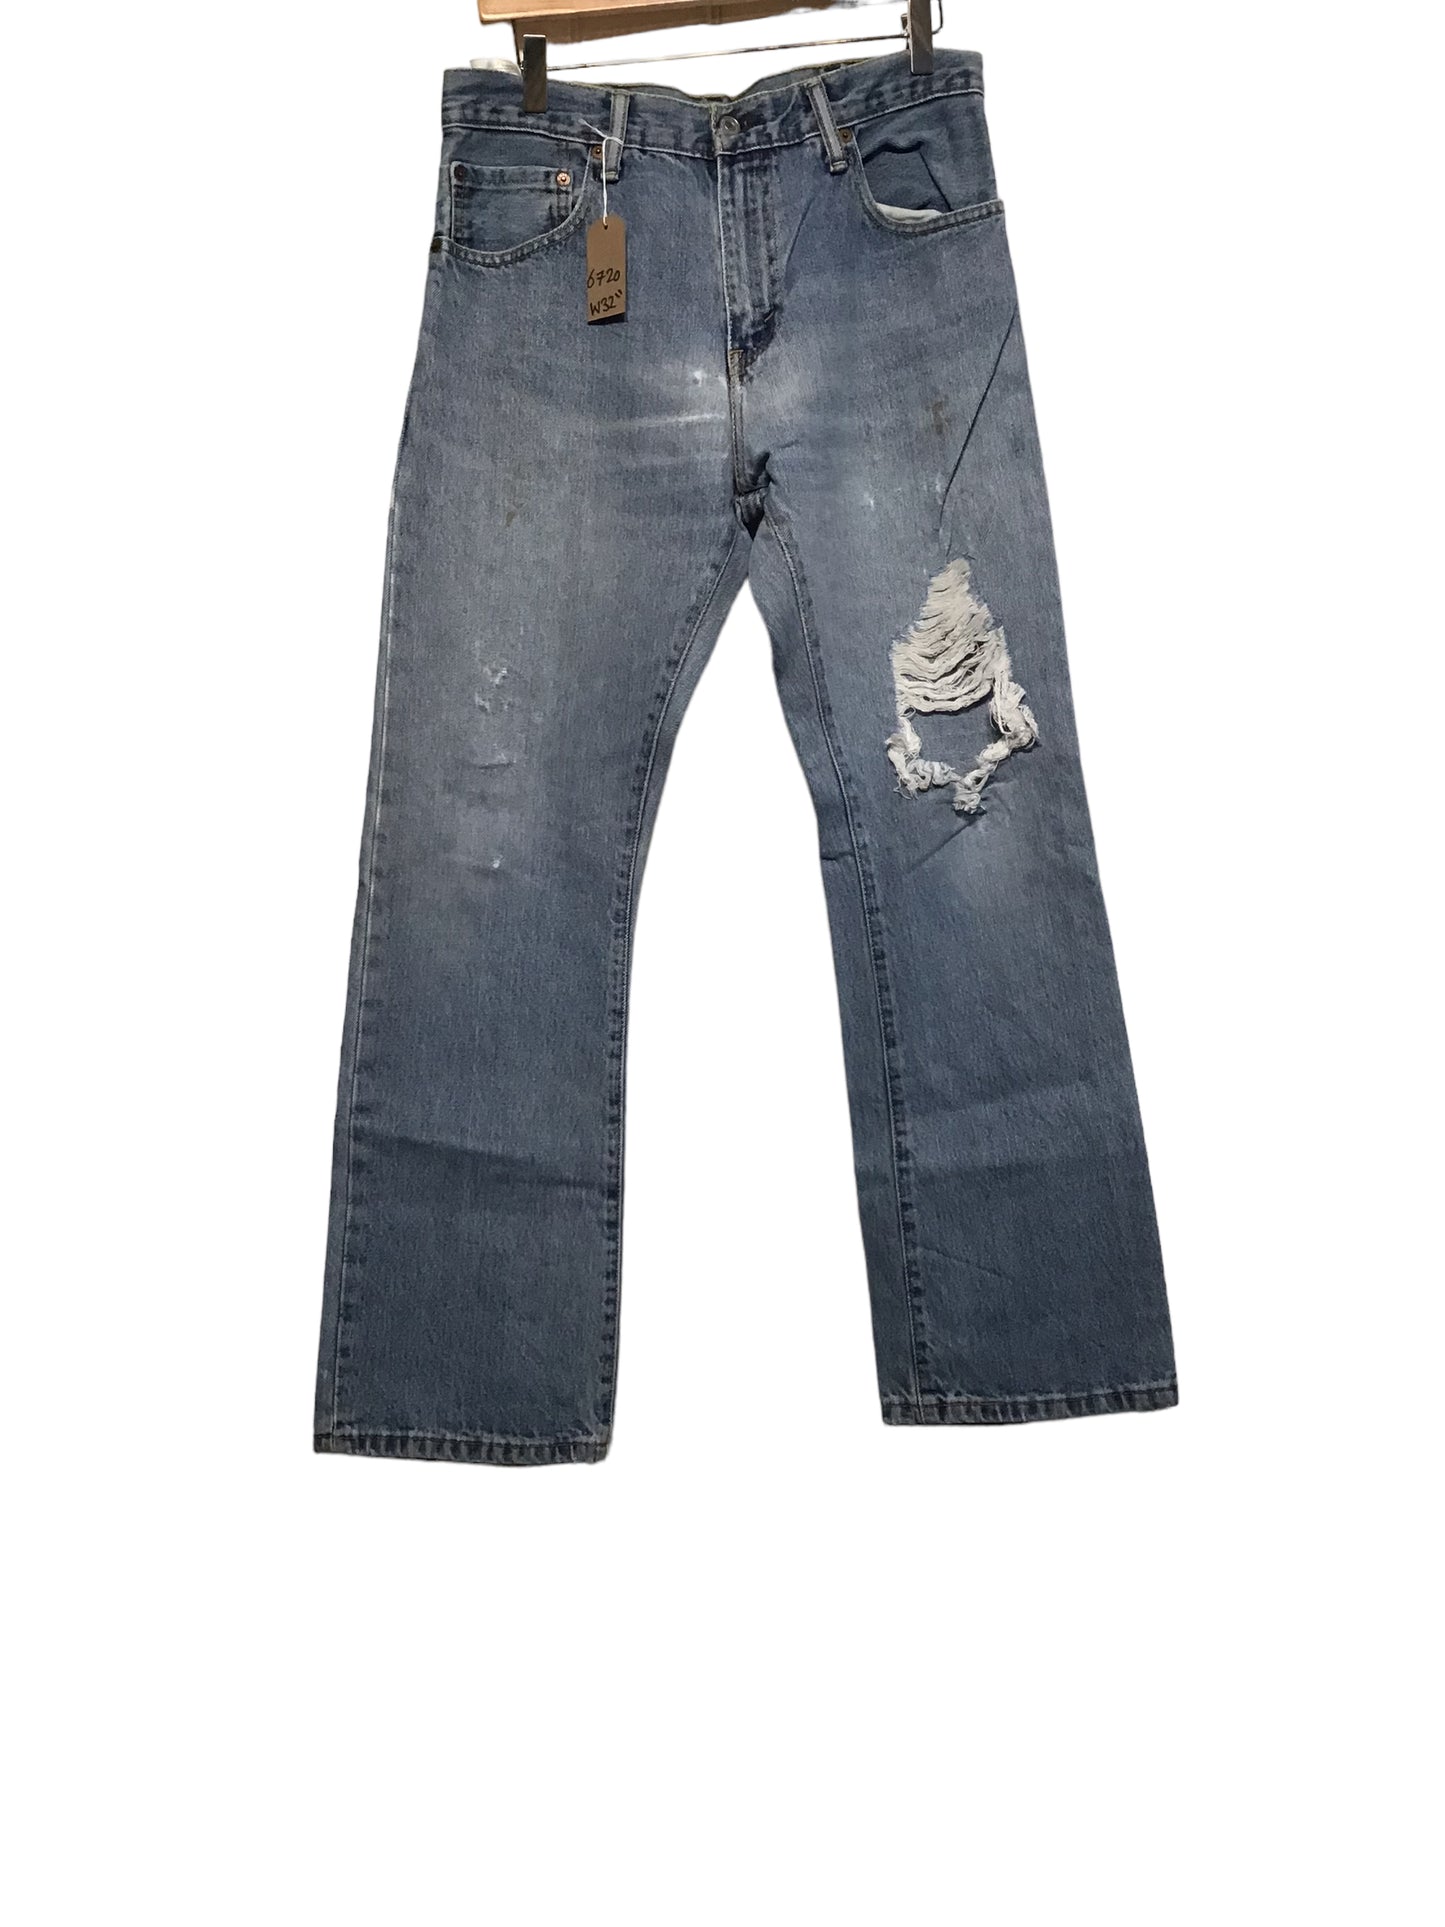 Levi 517 Jeans (31x30)